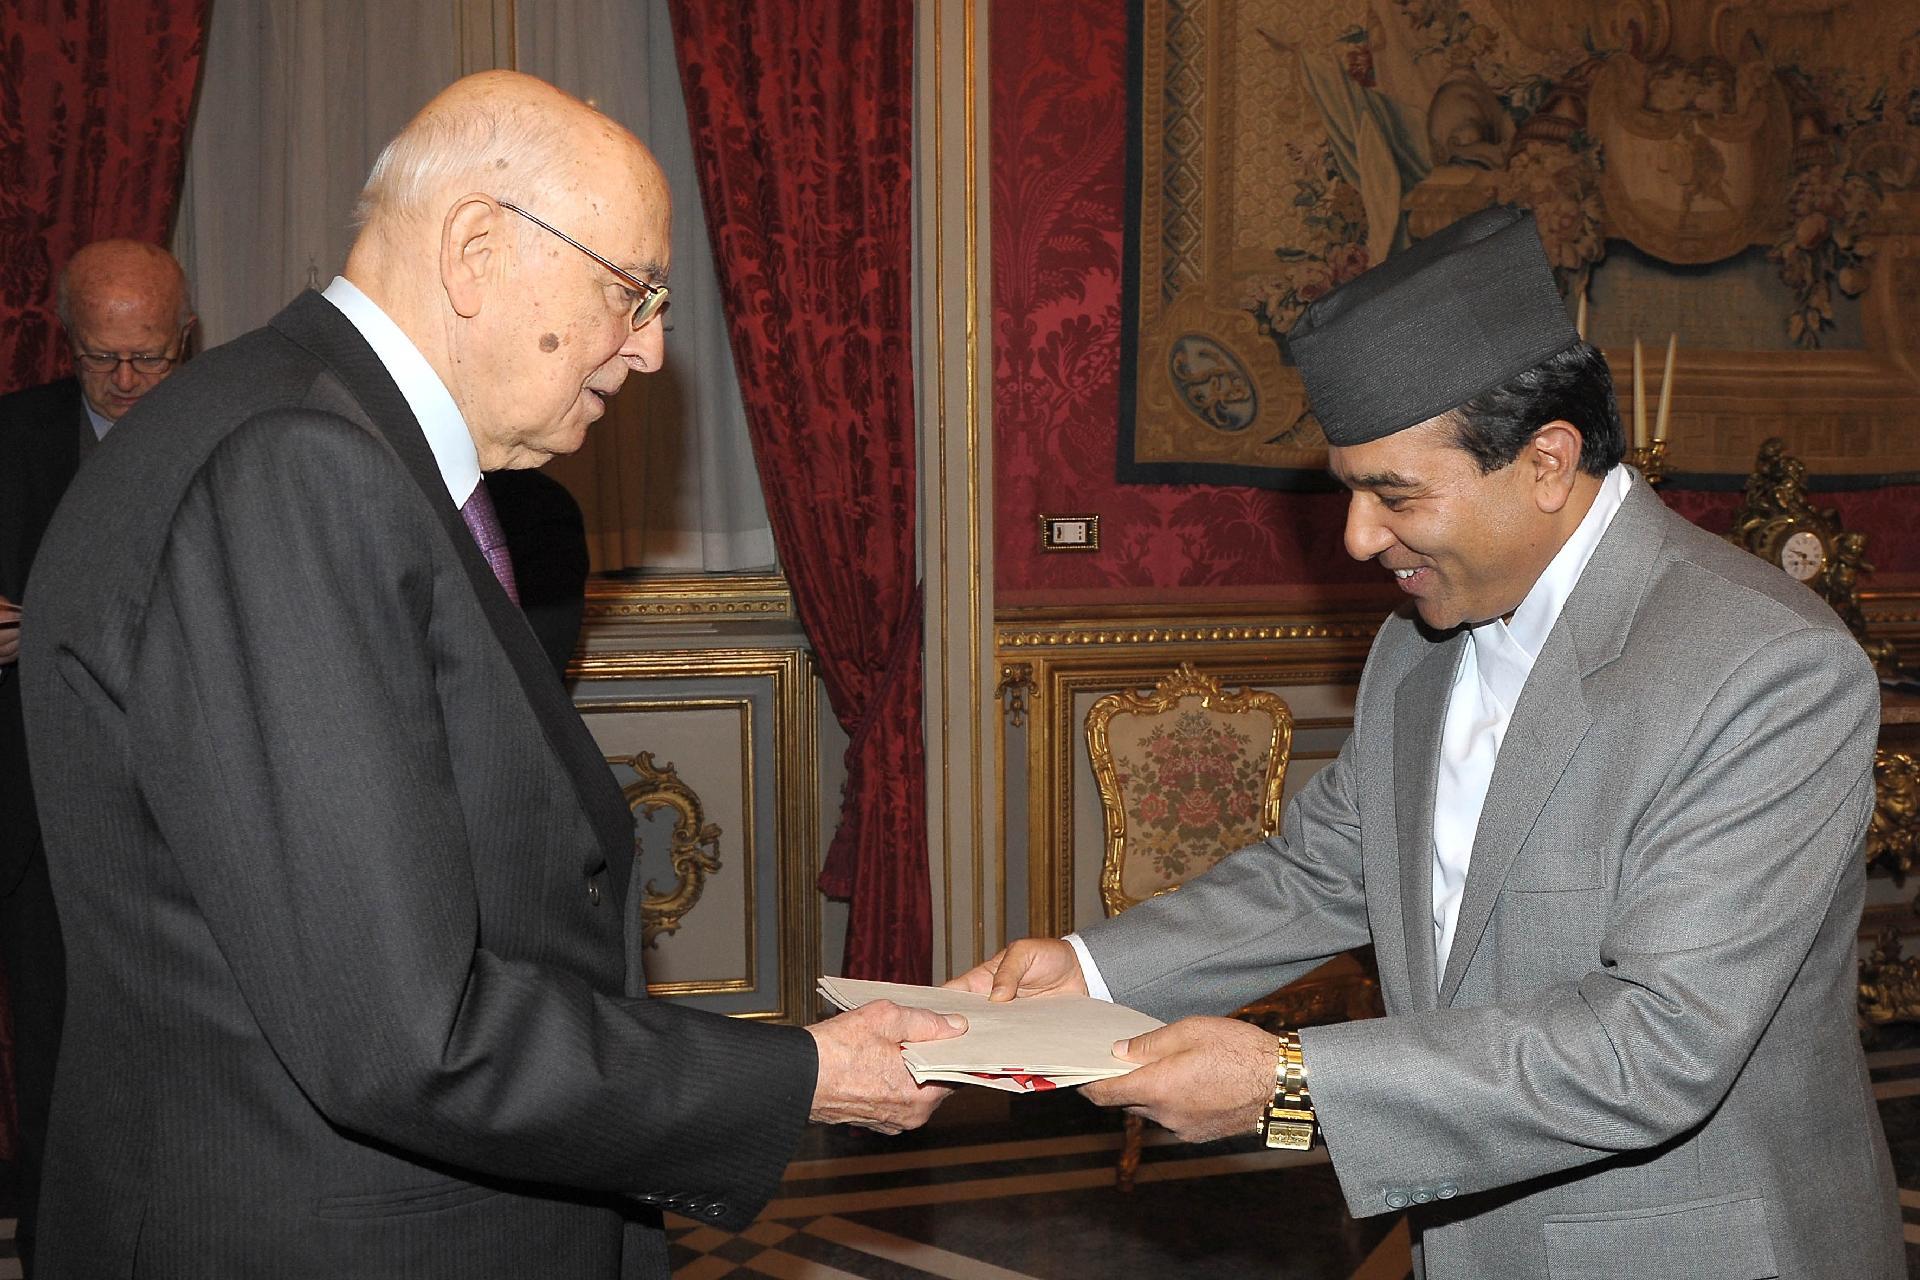 Il Presidente Giorgio Napolitano con il Signor Shanker Das Bairagi, nuovo Ambasciatore della Repubblica Federale Democratica del Nepal in occasione della presentazione delle Lettere Credenziali